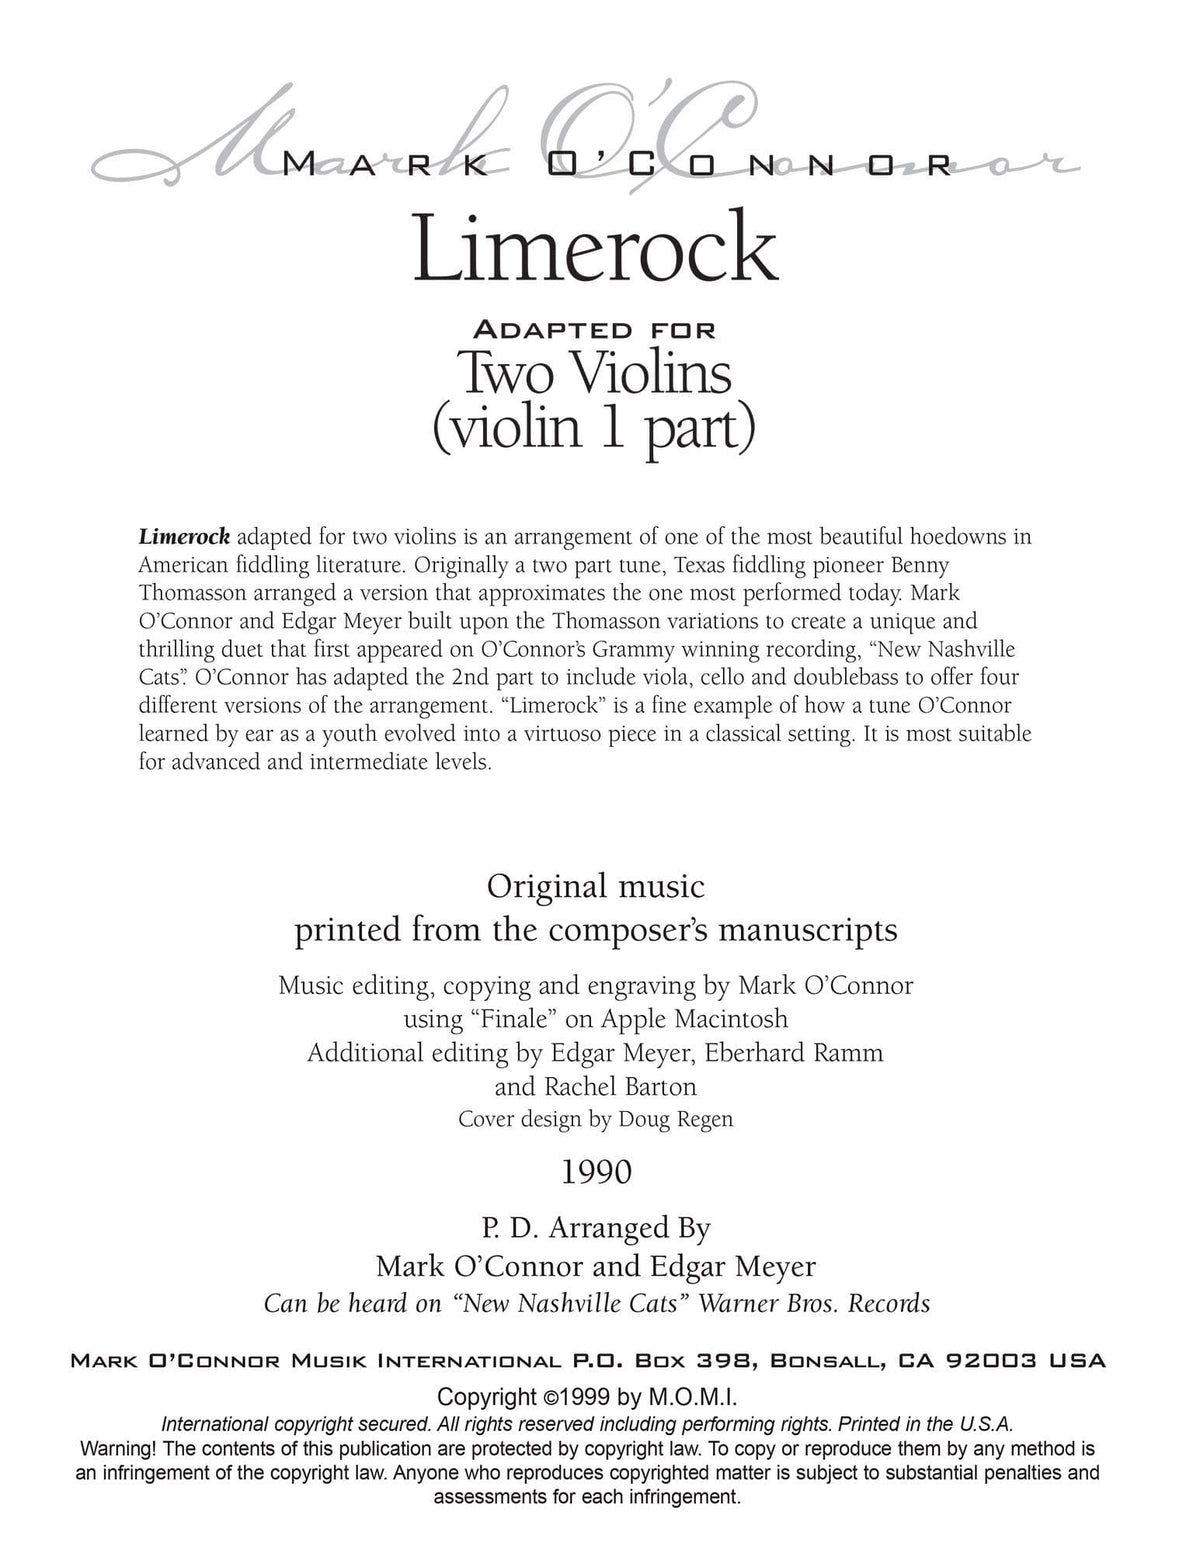 O'Connor, Mark - Limerock for 2 Violins - Violin 1 - Digital Download